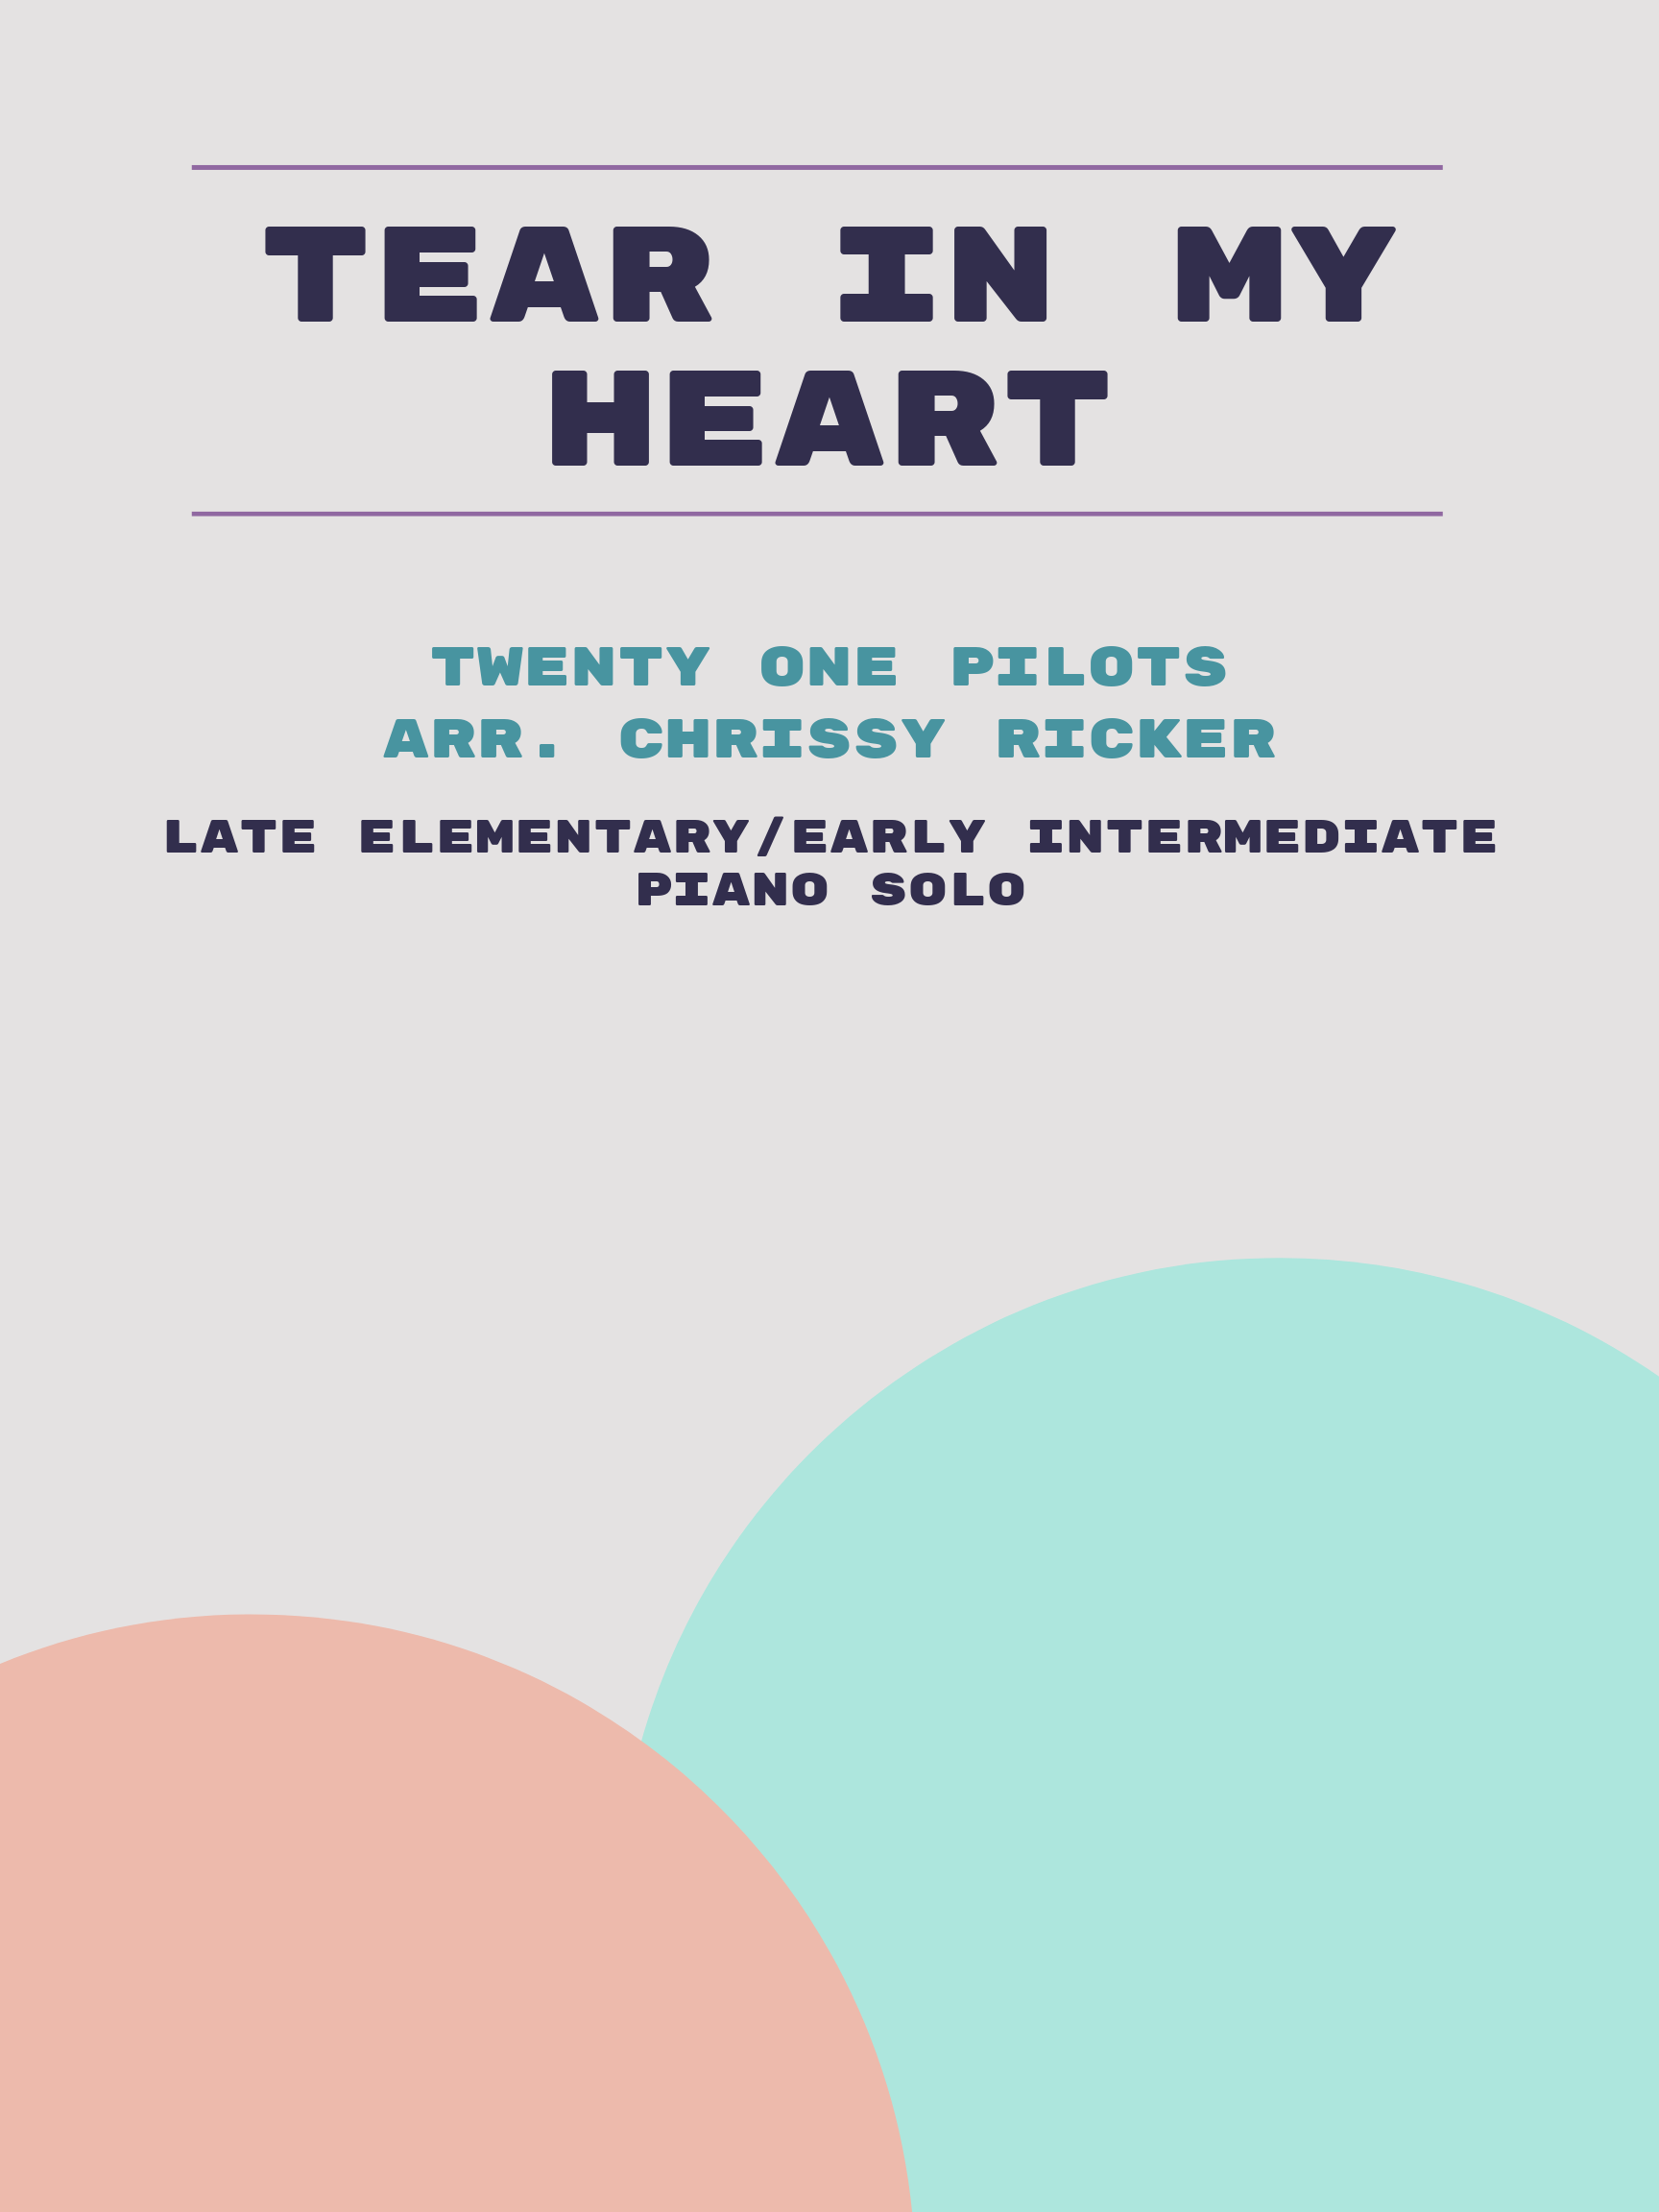 Tear in My Heart by Twenty One Pilots